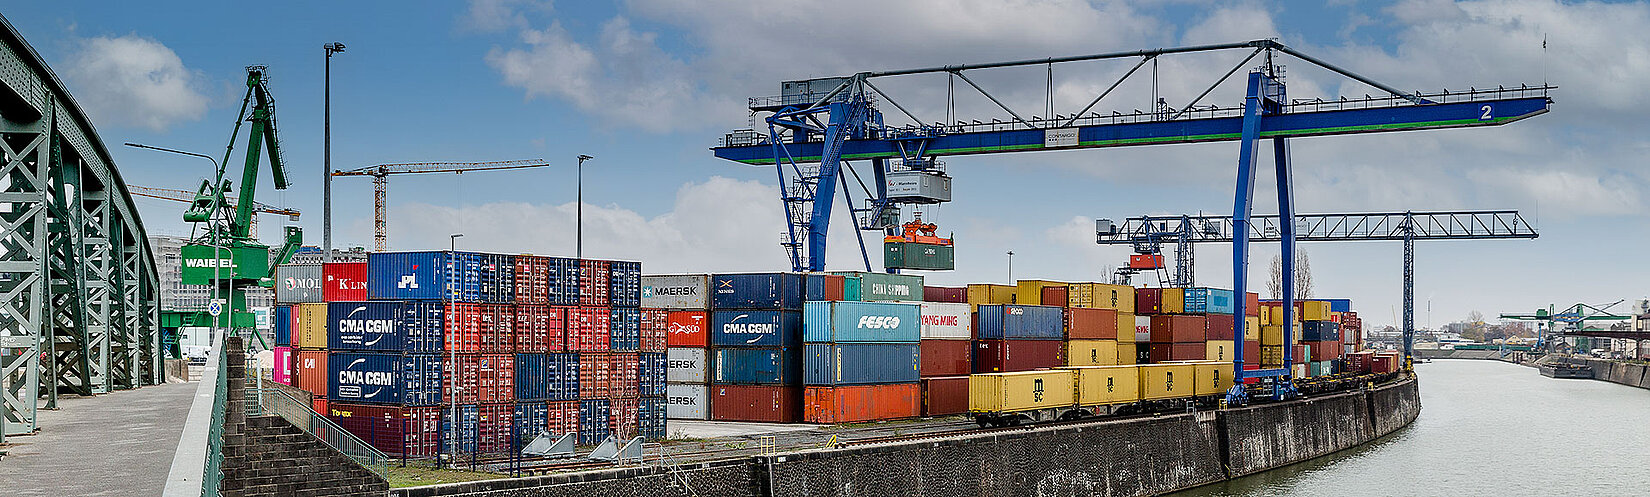 Container-Terminal Frankfurt-Ost mit Krananlage und Fluss im Vordergrund